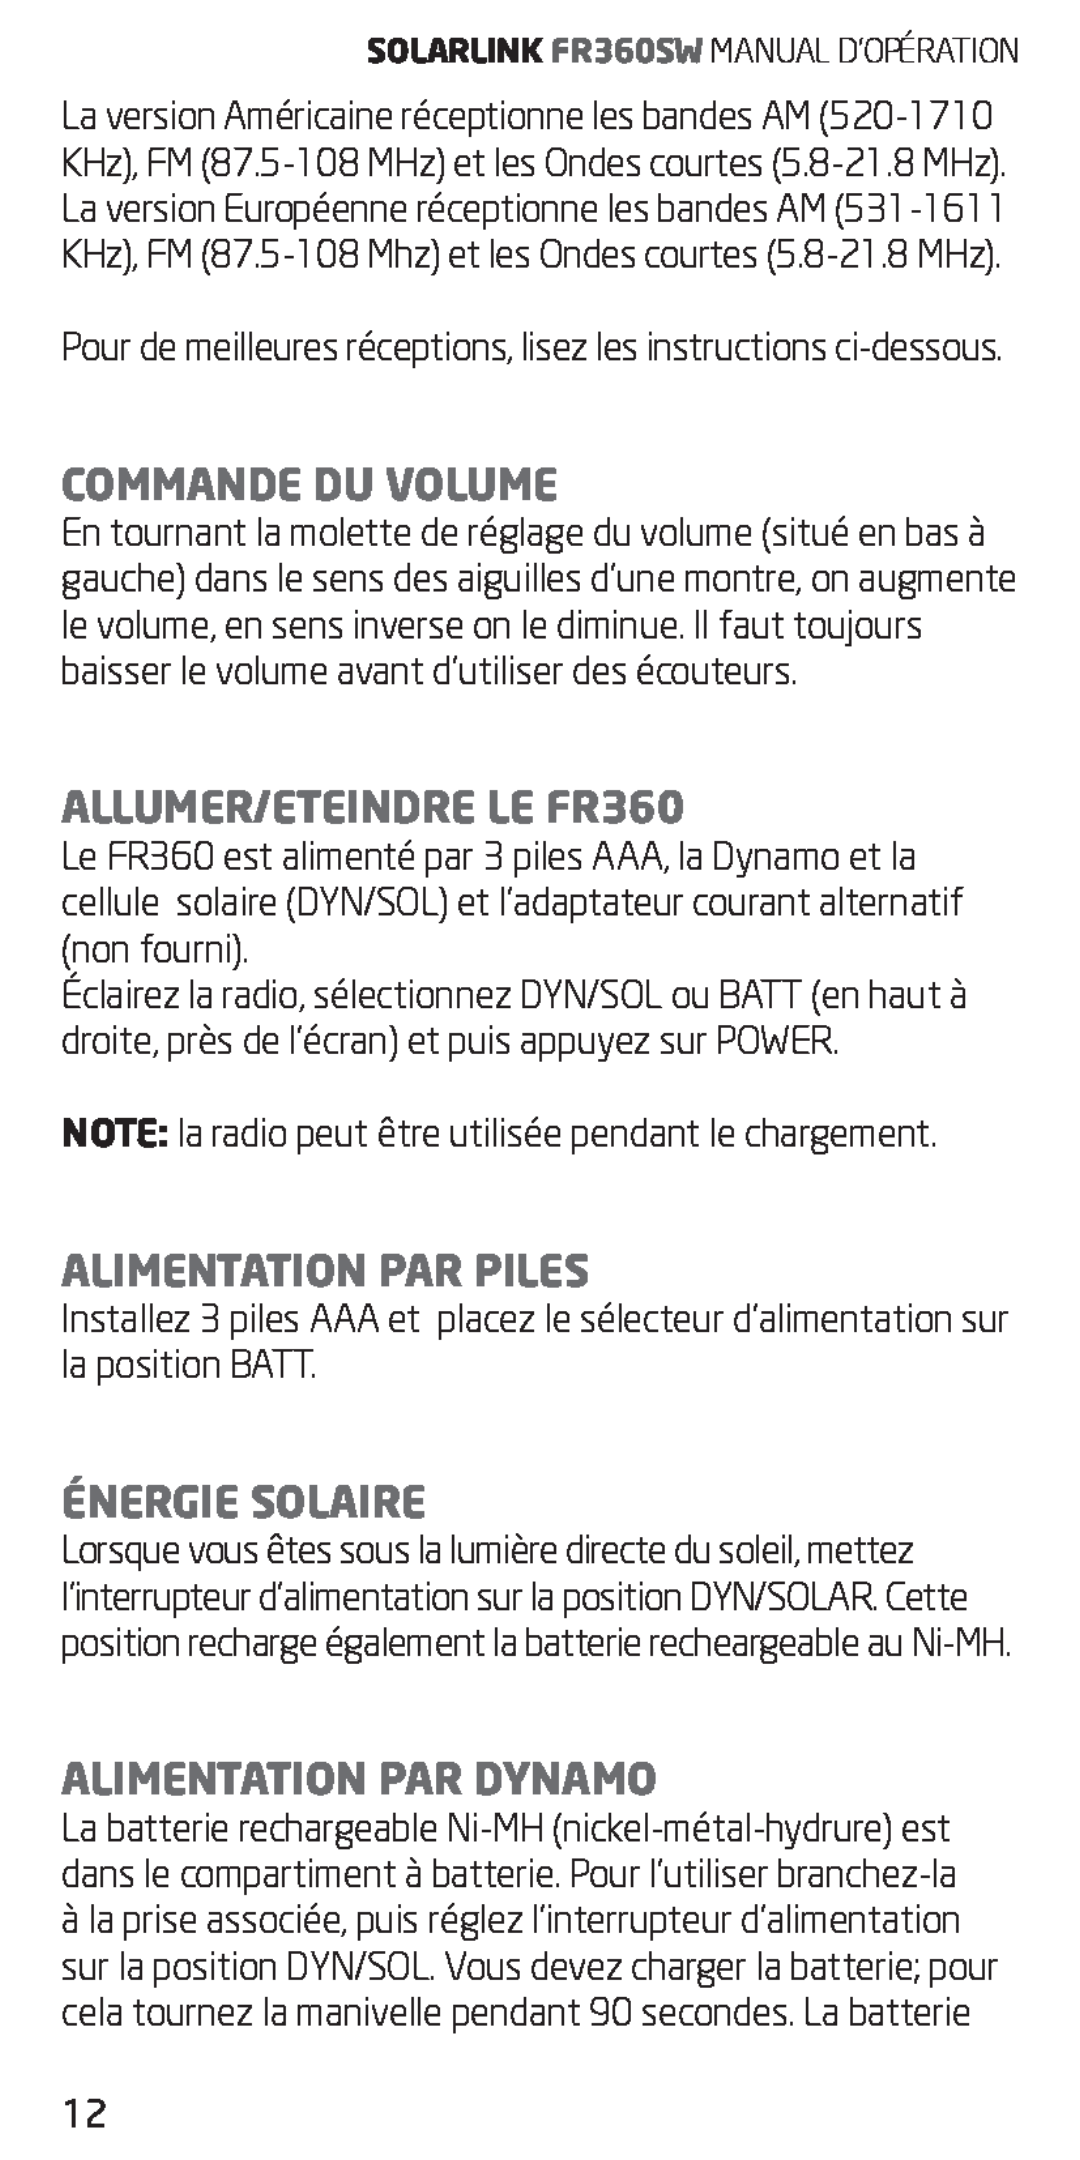 Eton Commande Du Volume, ALLUMER/ETEINDRE LE FR360, Alimentation Par Piles, Énergie Solaire, Alimentation Par Dynamo 